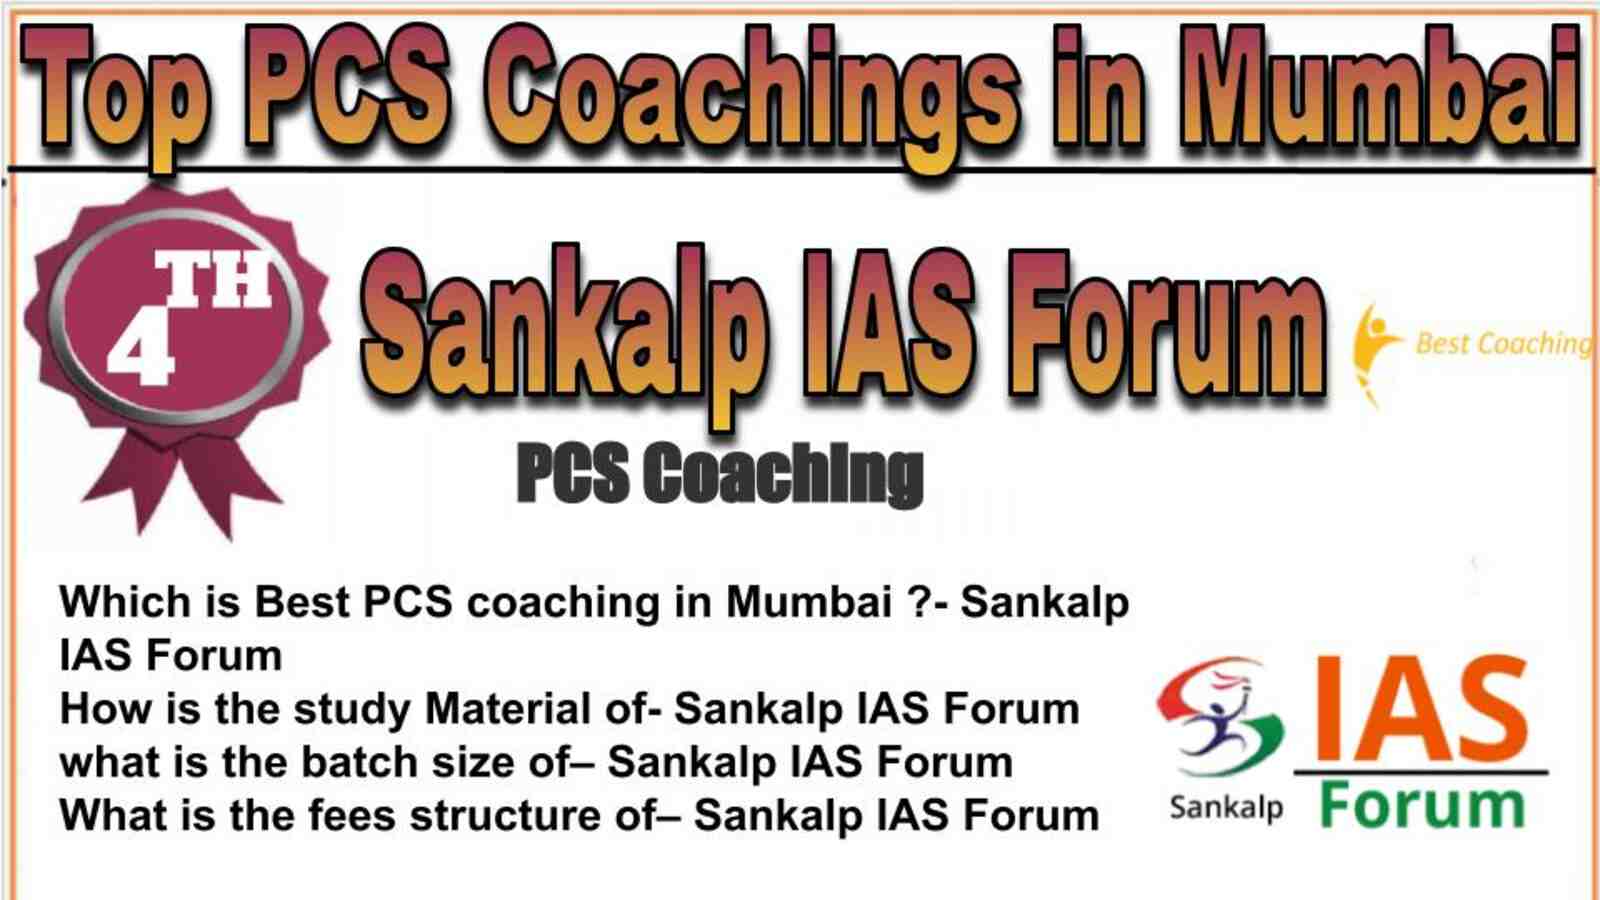 Rank 4 top PCS Coachings in Mumbai